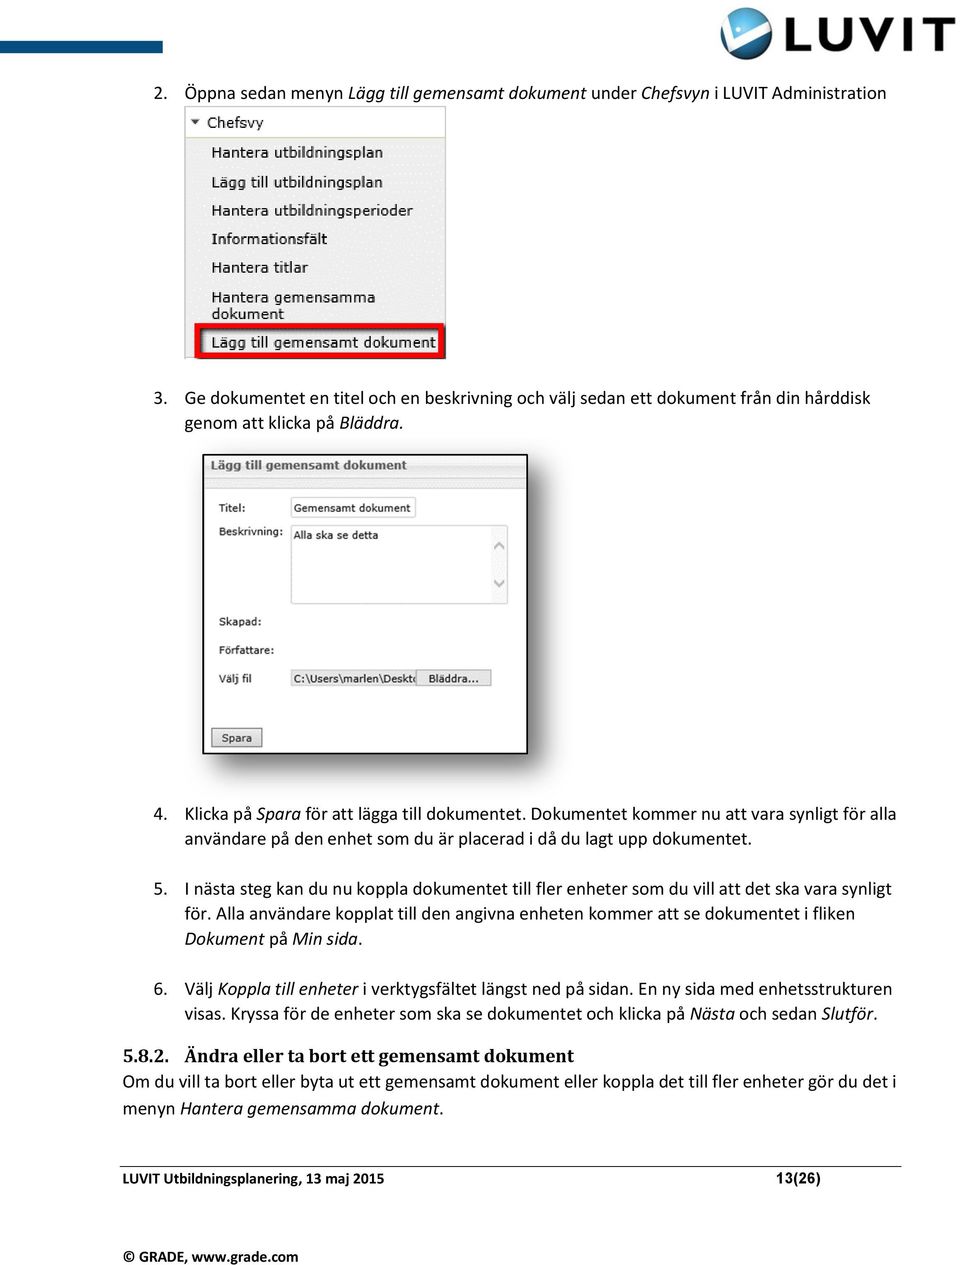 Dokumentet kommer nu att vara synligt för alla användare på den enhet som du är placerad i då du lagt upp dokumentet. 5.